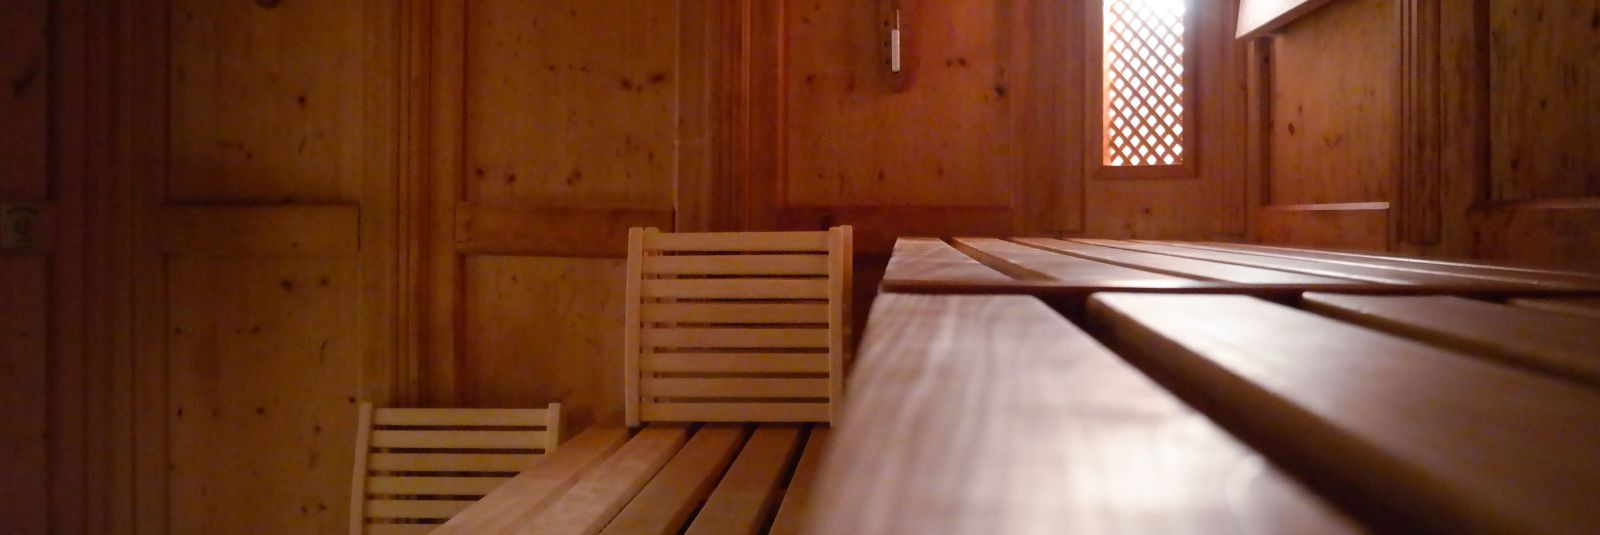 Saunaskäik võib olla palju enamat kui lihtsalt kohustuslik rituaal. HT PARTNERID OÜ pakub teile võimalust muuta oma kodune saunaelamus midagi tõeliselt erilist.